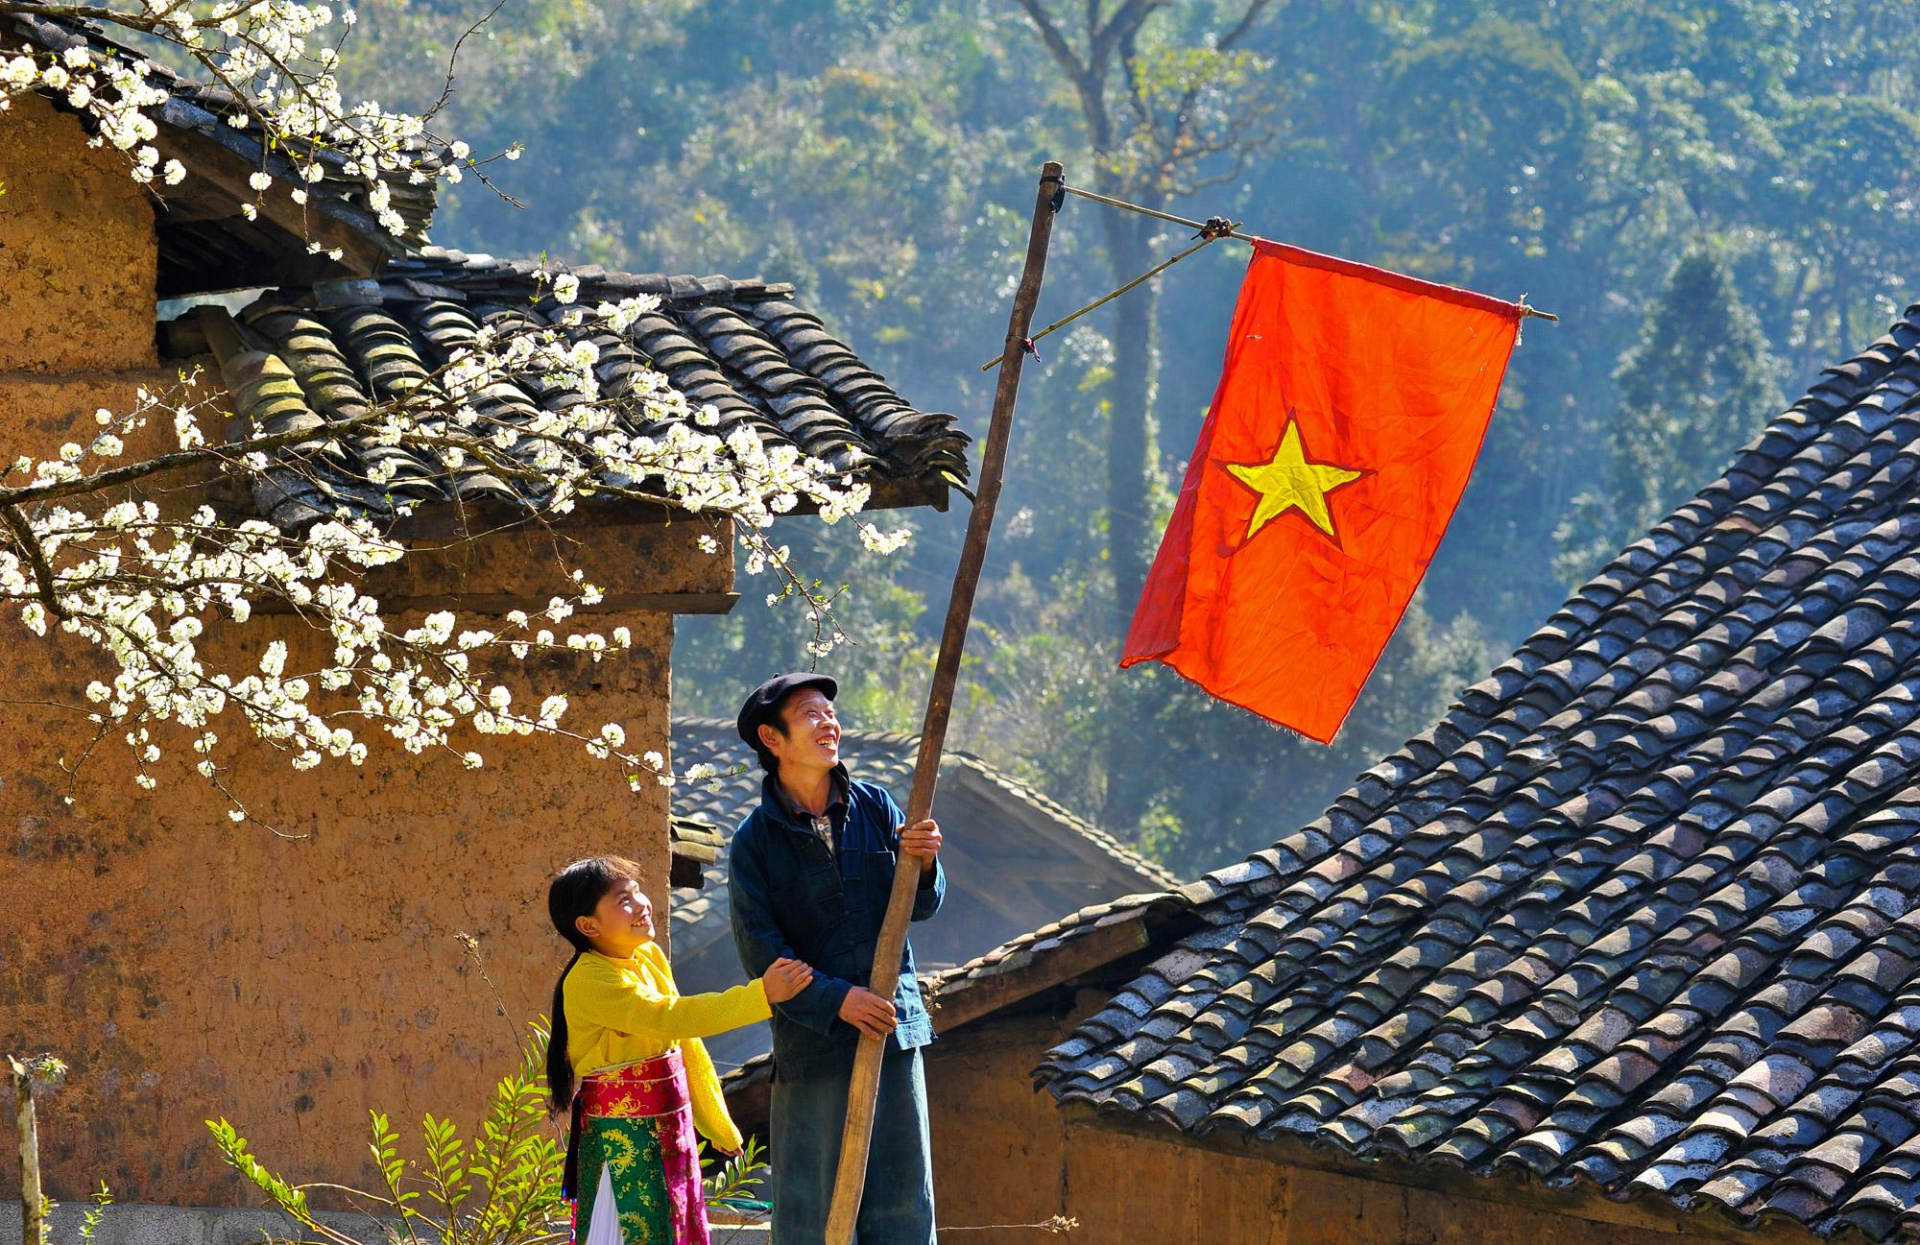 Ý thức quốc gia - dân tộc Việt Nam được hình thành, vun đắp và phát triển bởi các thế hệ người dân Việt Nam và là cội nguồn sức mạnh của dân tộc Việt Nam trong suốt chiều dài lịch sử (Ảnh tư liệu: Mùa xuân biên cương)